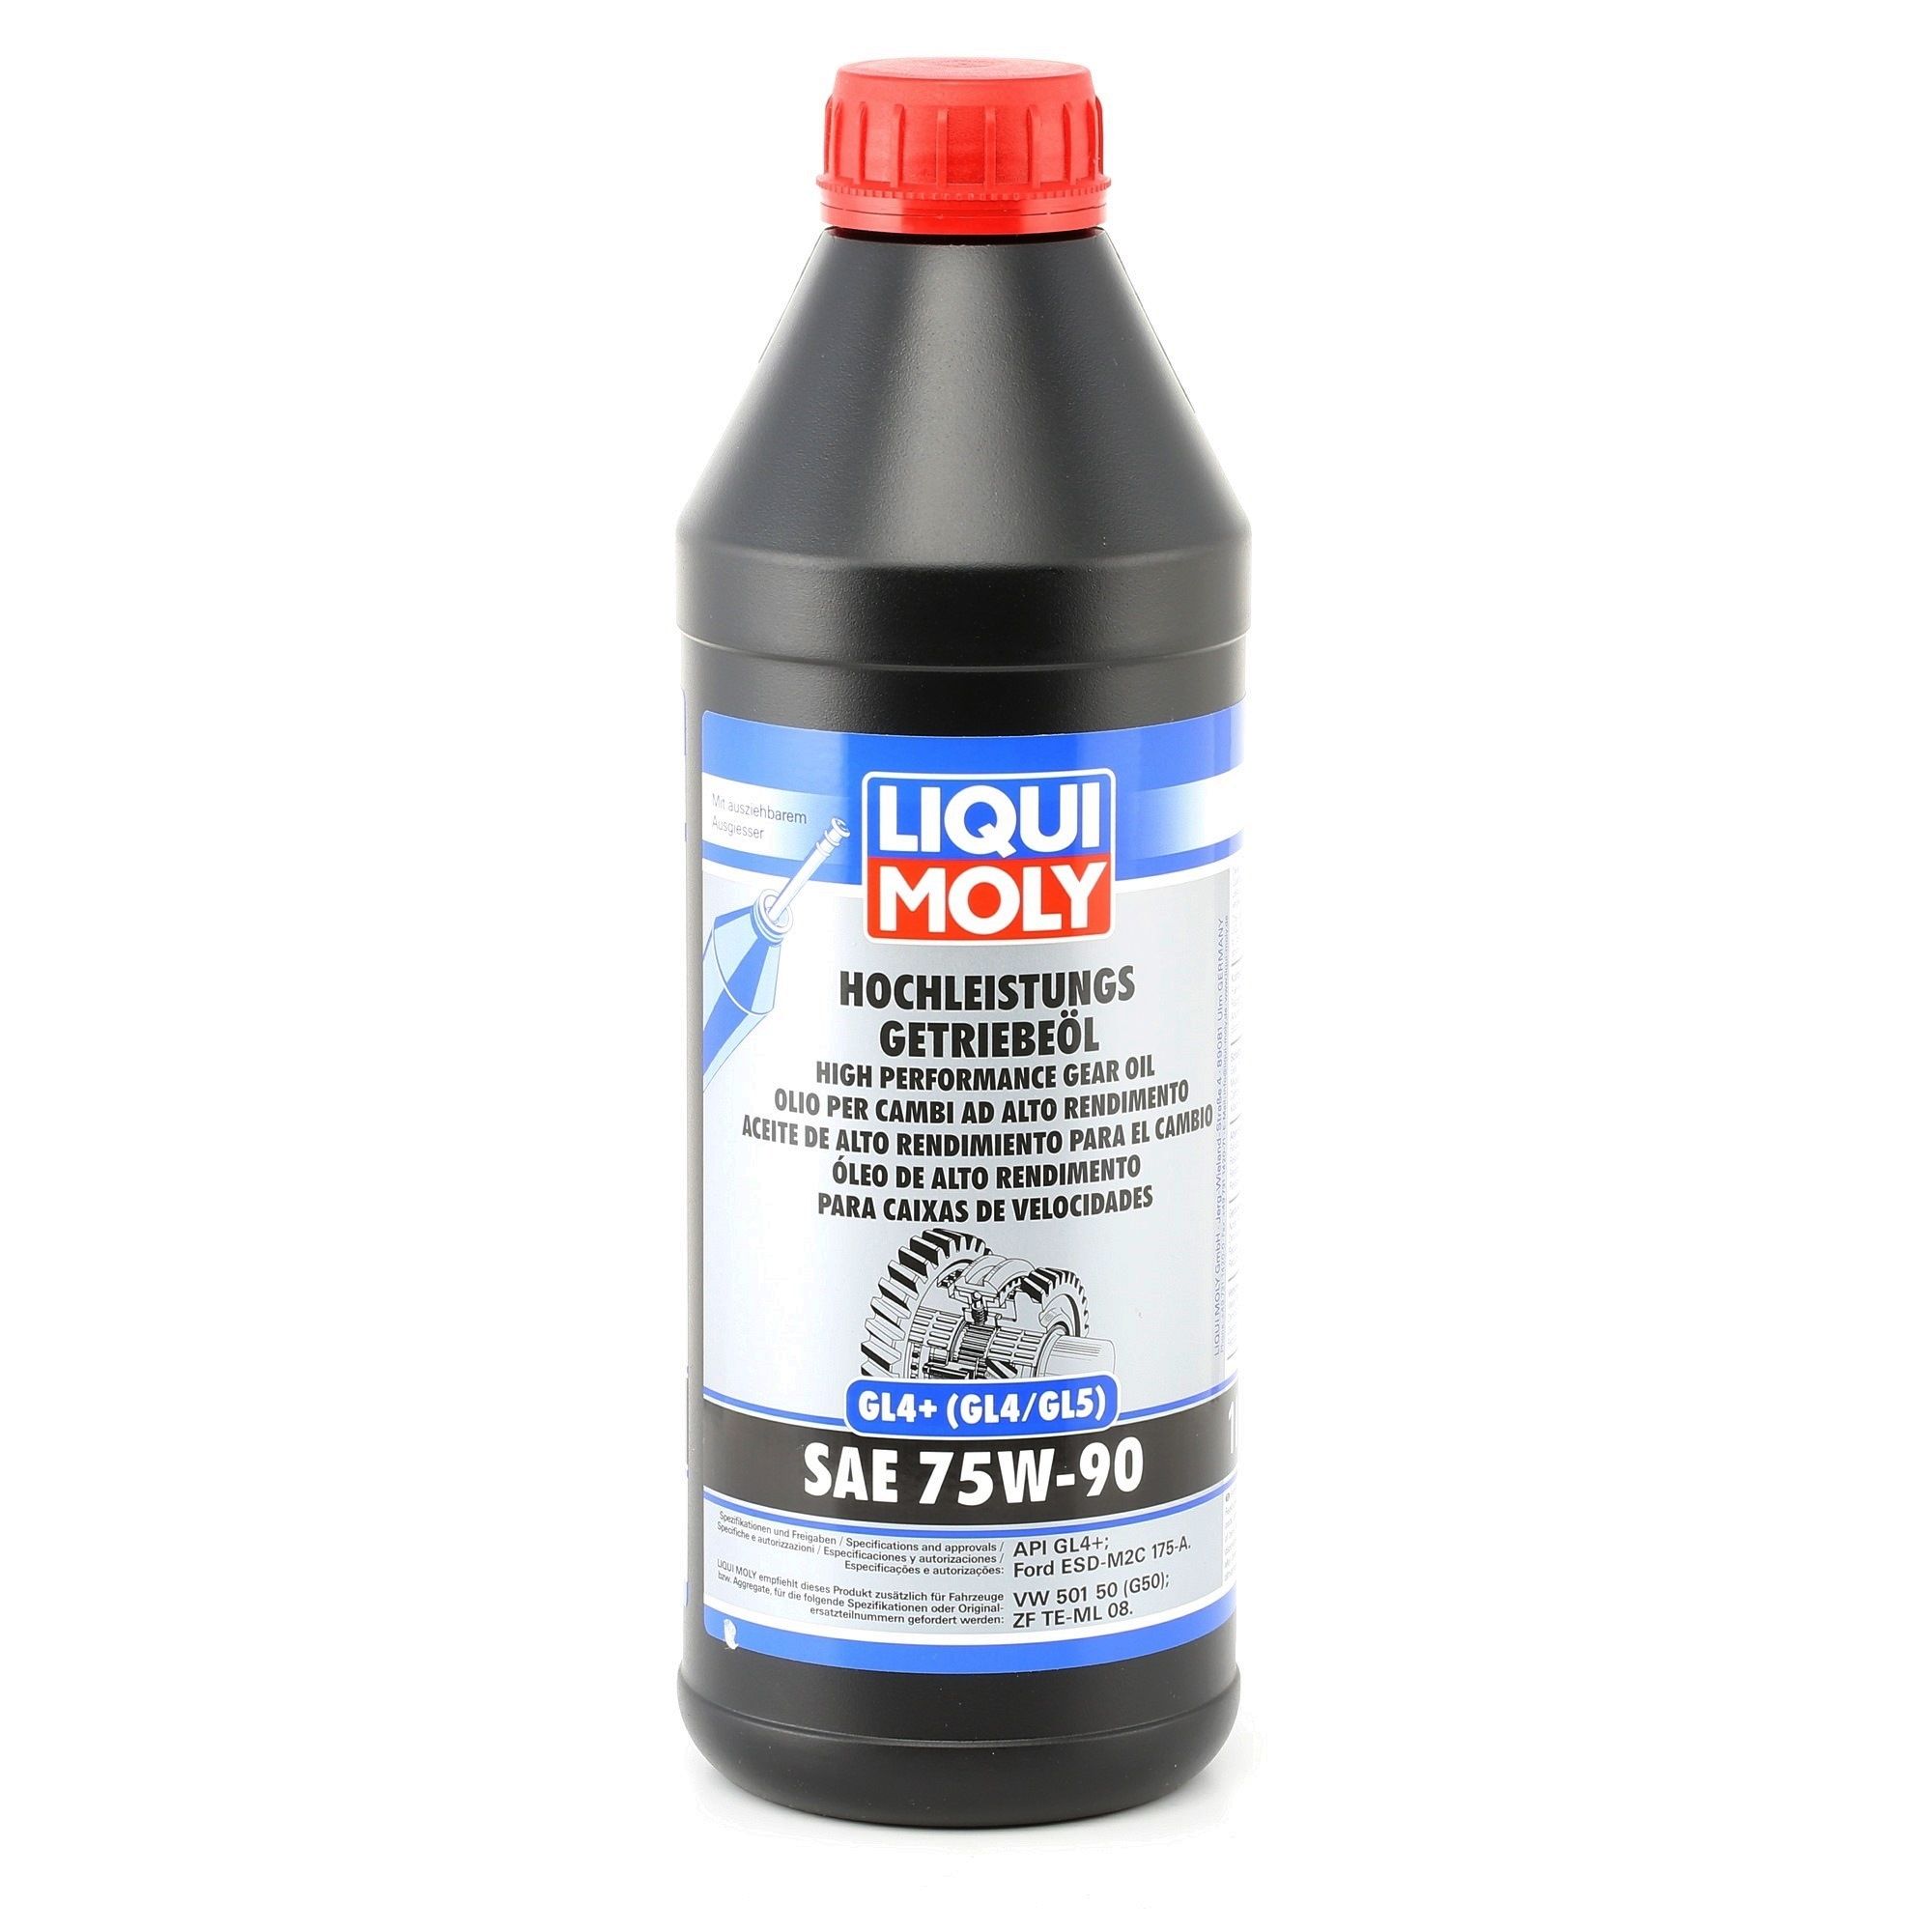 Motorrad Ersatzteile Öle & Flüssigkeiten: Schaltgetriebeöl LIQUI MOLY Hochleistungs GL4+ 4434